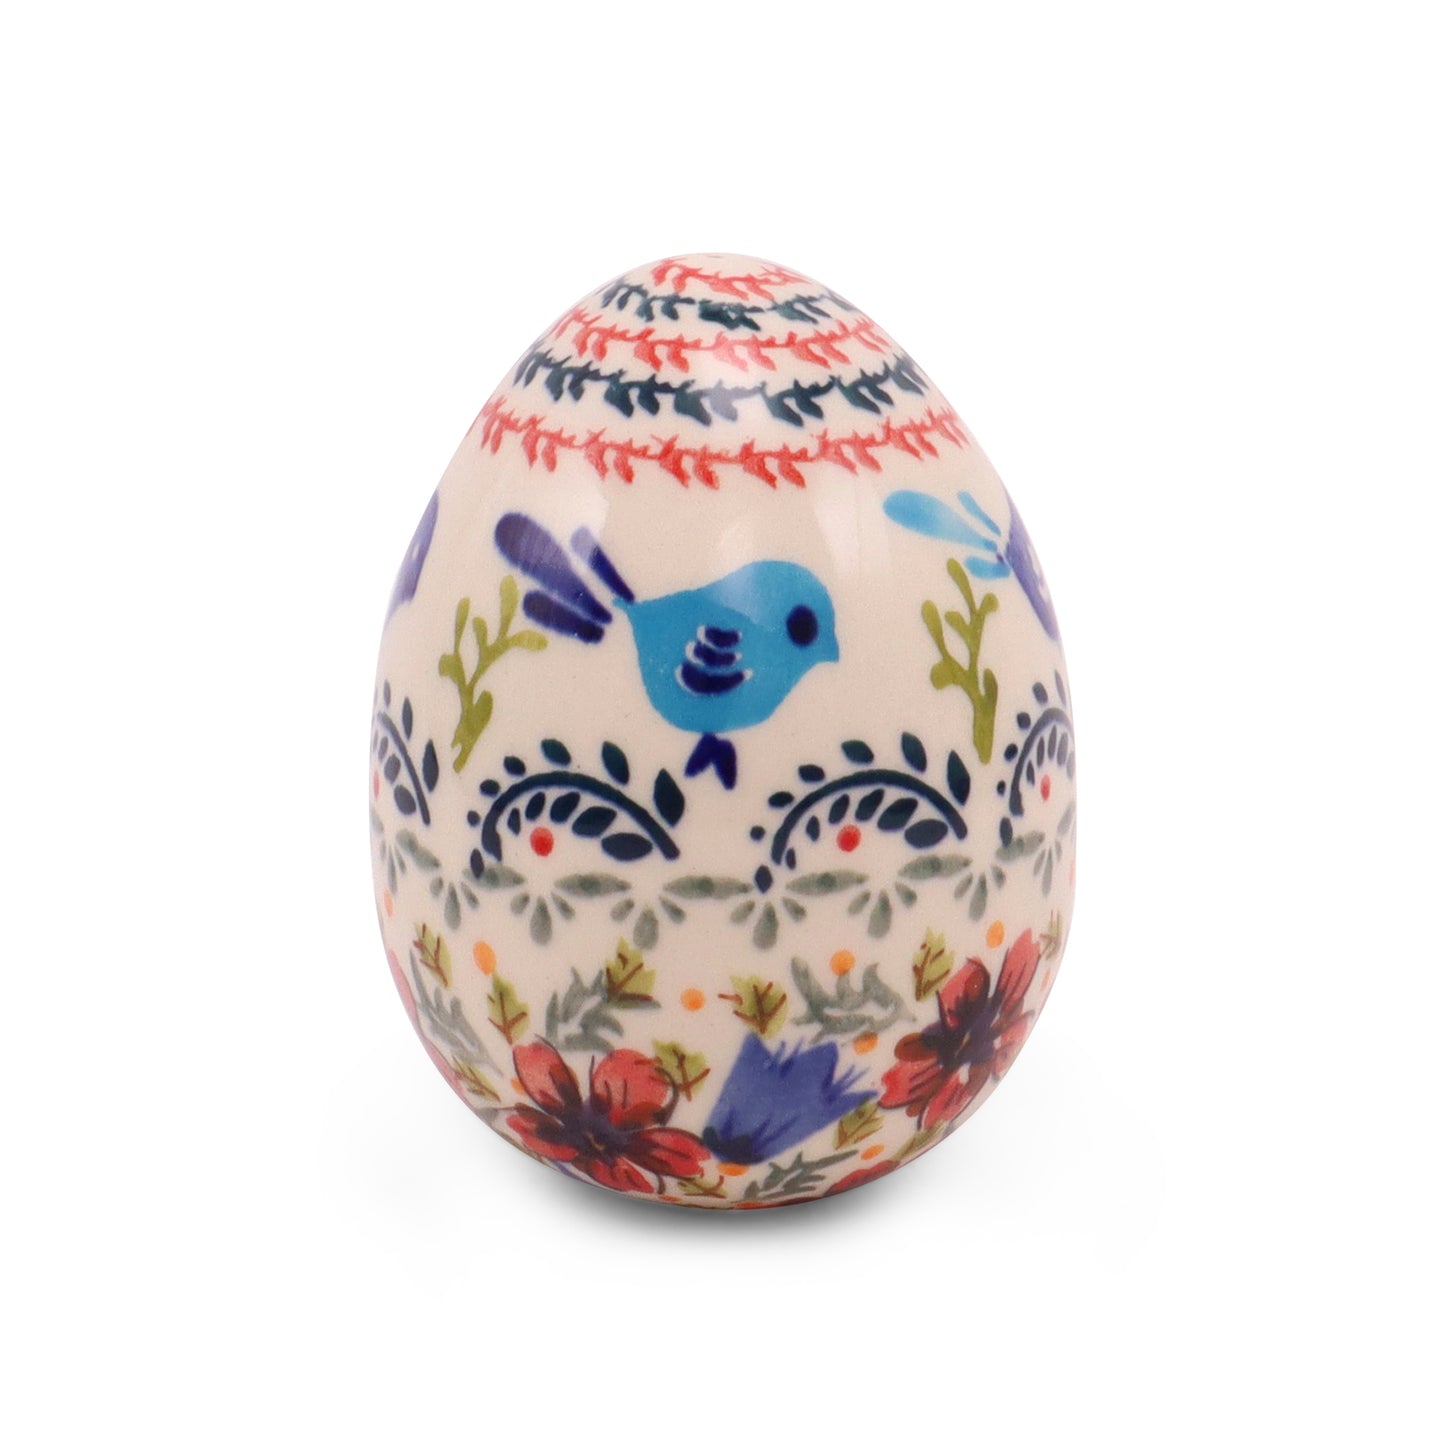 3"x4.5" Egg Figurine. Pattern: Bluebird Bliss